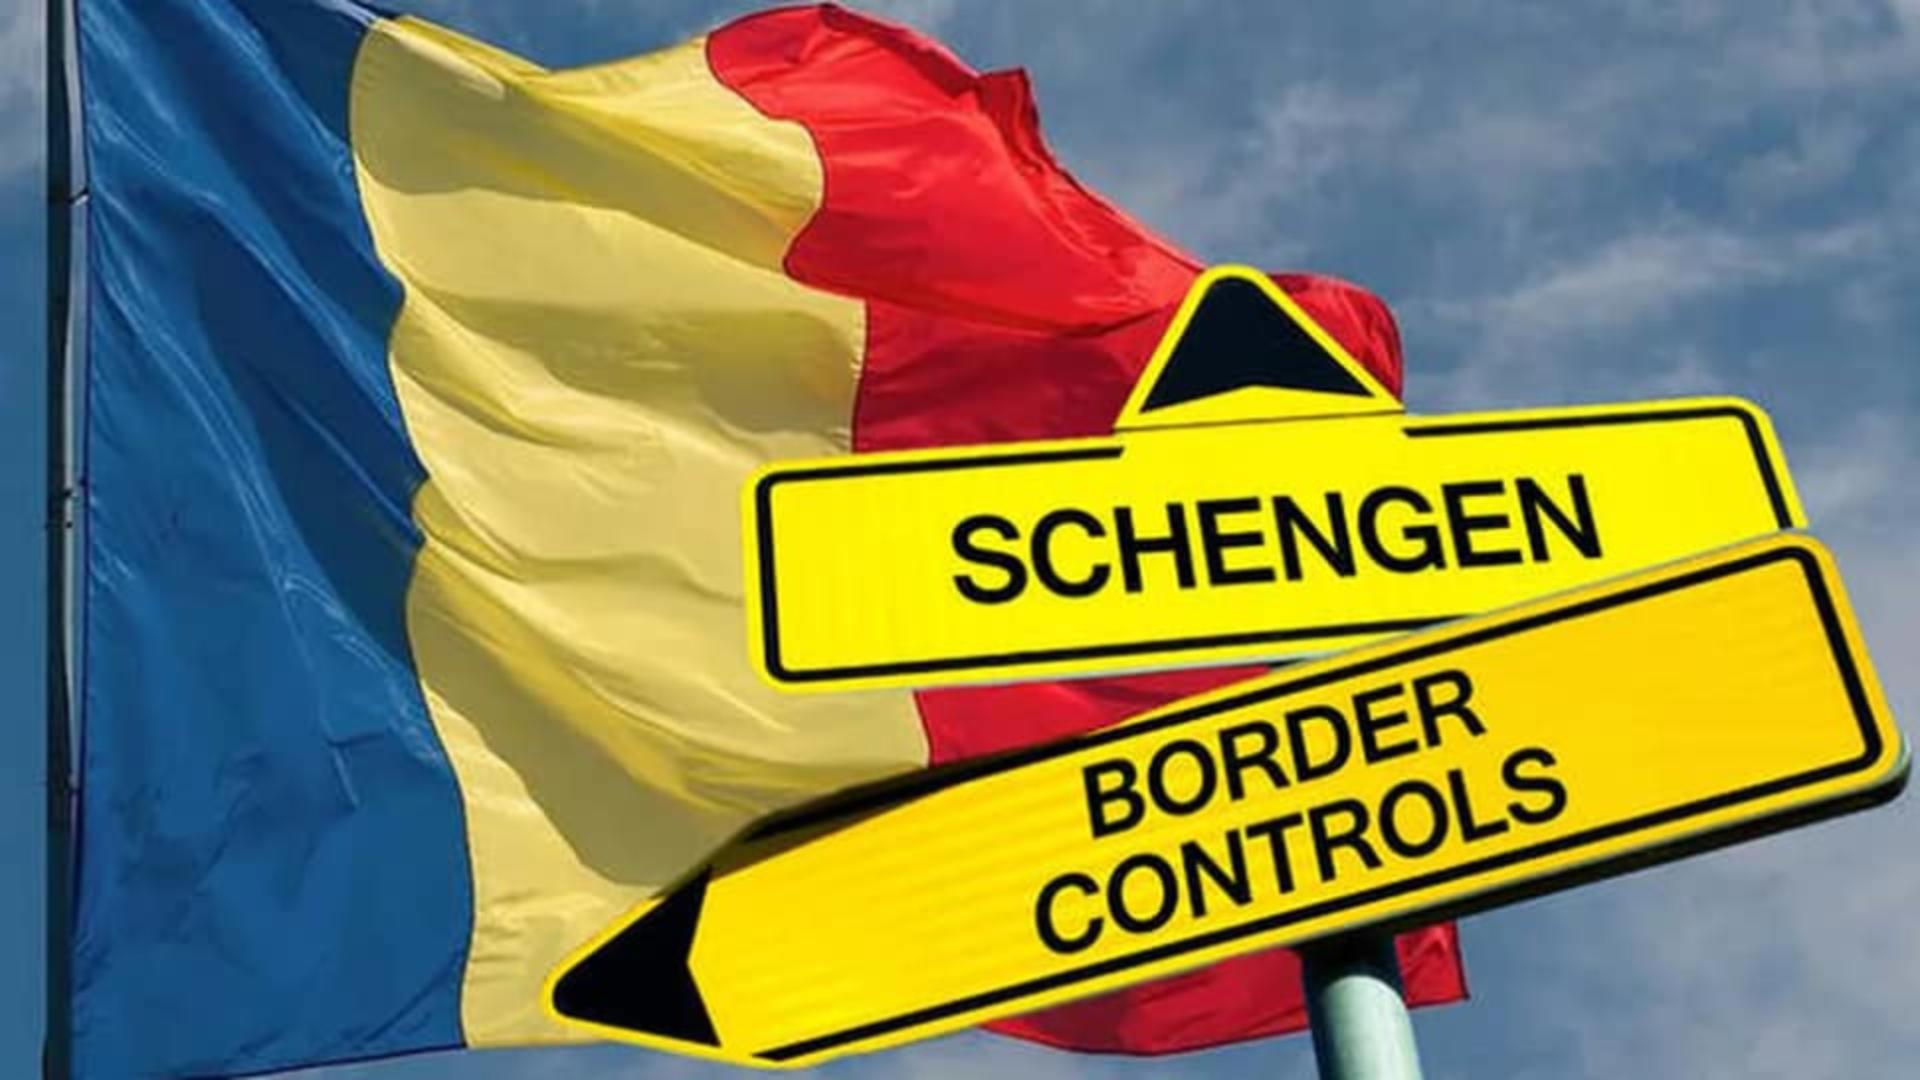 Austria: Deschiderea spaţiului maritim şi aerian pentru România şi Bulgaria nu constituie o apartenenţă deplină la Schengen